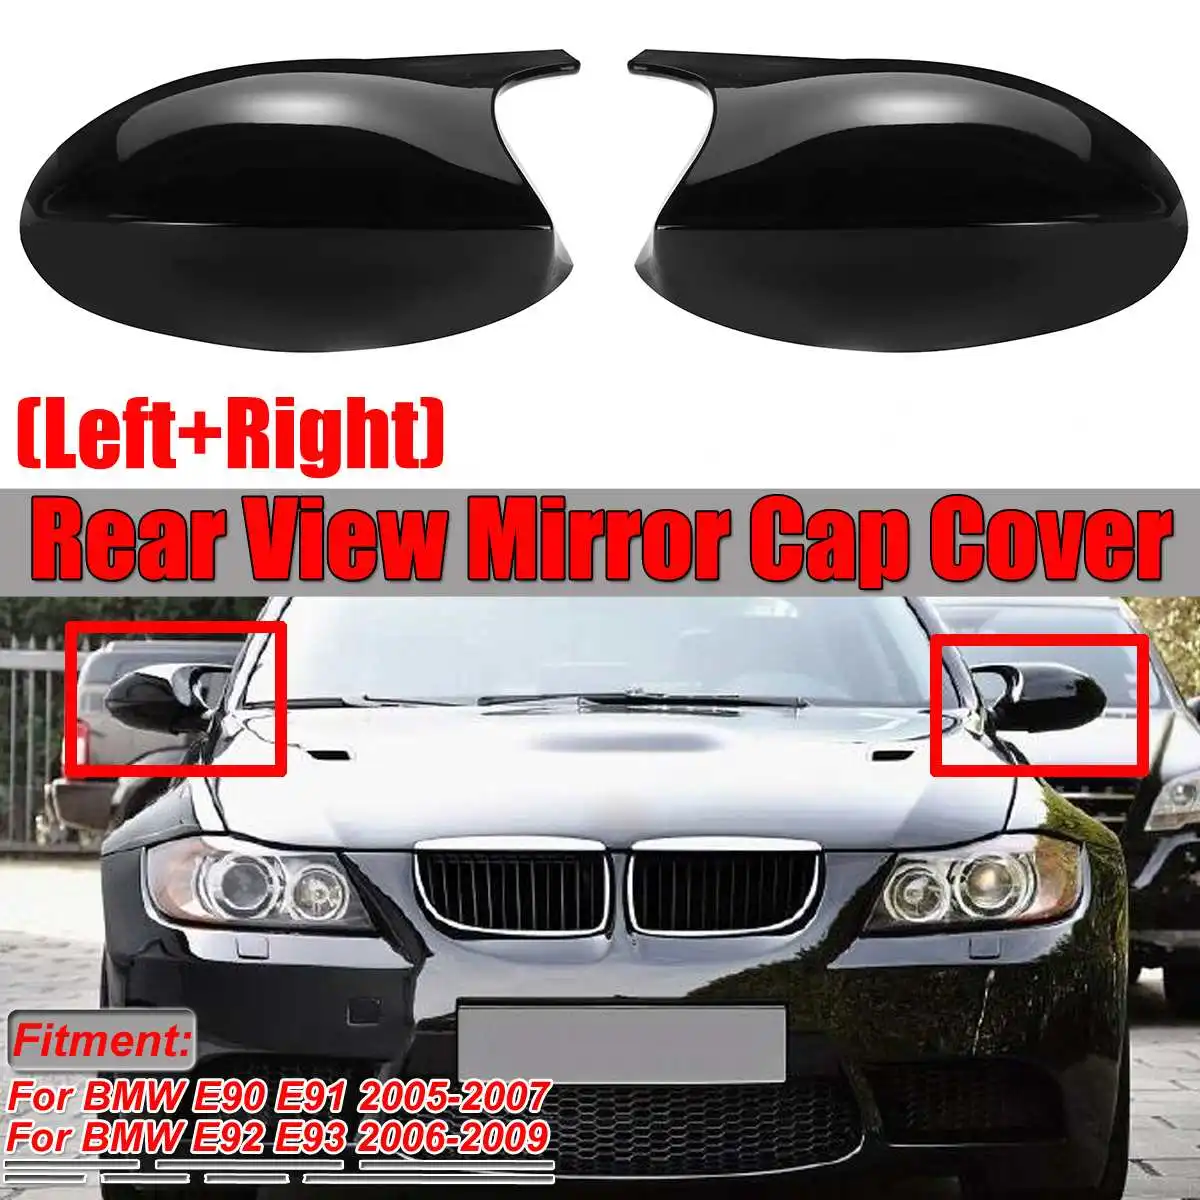 M3 стильная зеркальная крышка E90 Автомобильная боковая зеркальная крышка Крышка для BMW E90 E91 2005-2007 E92 E93 2006-2009 E80 E81 E87 Прямая замена